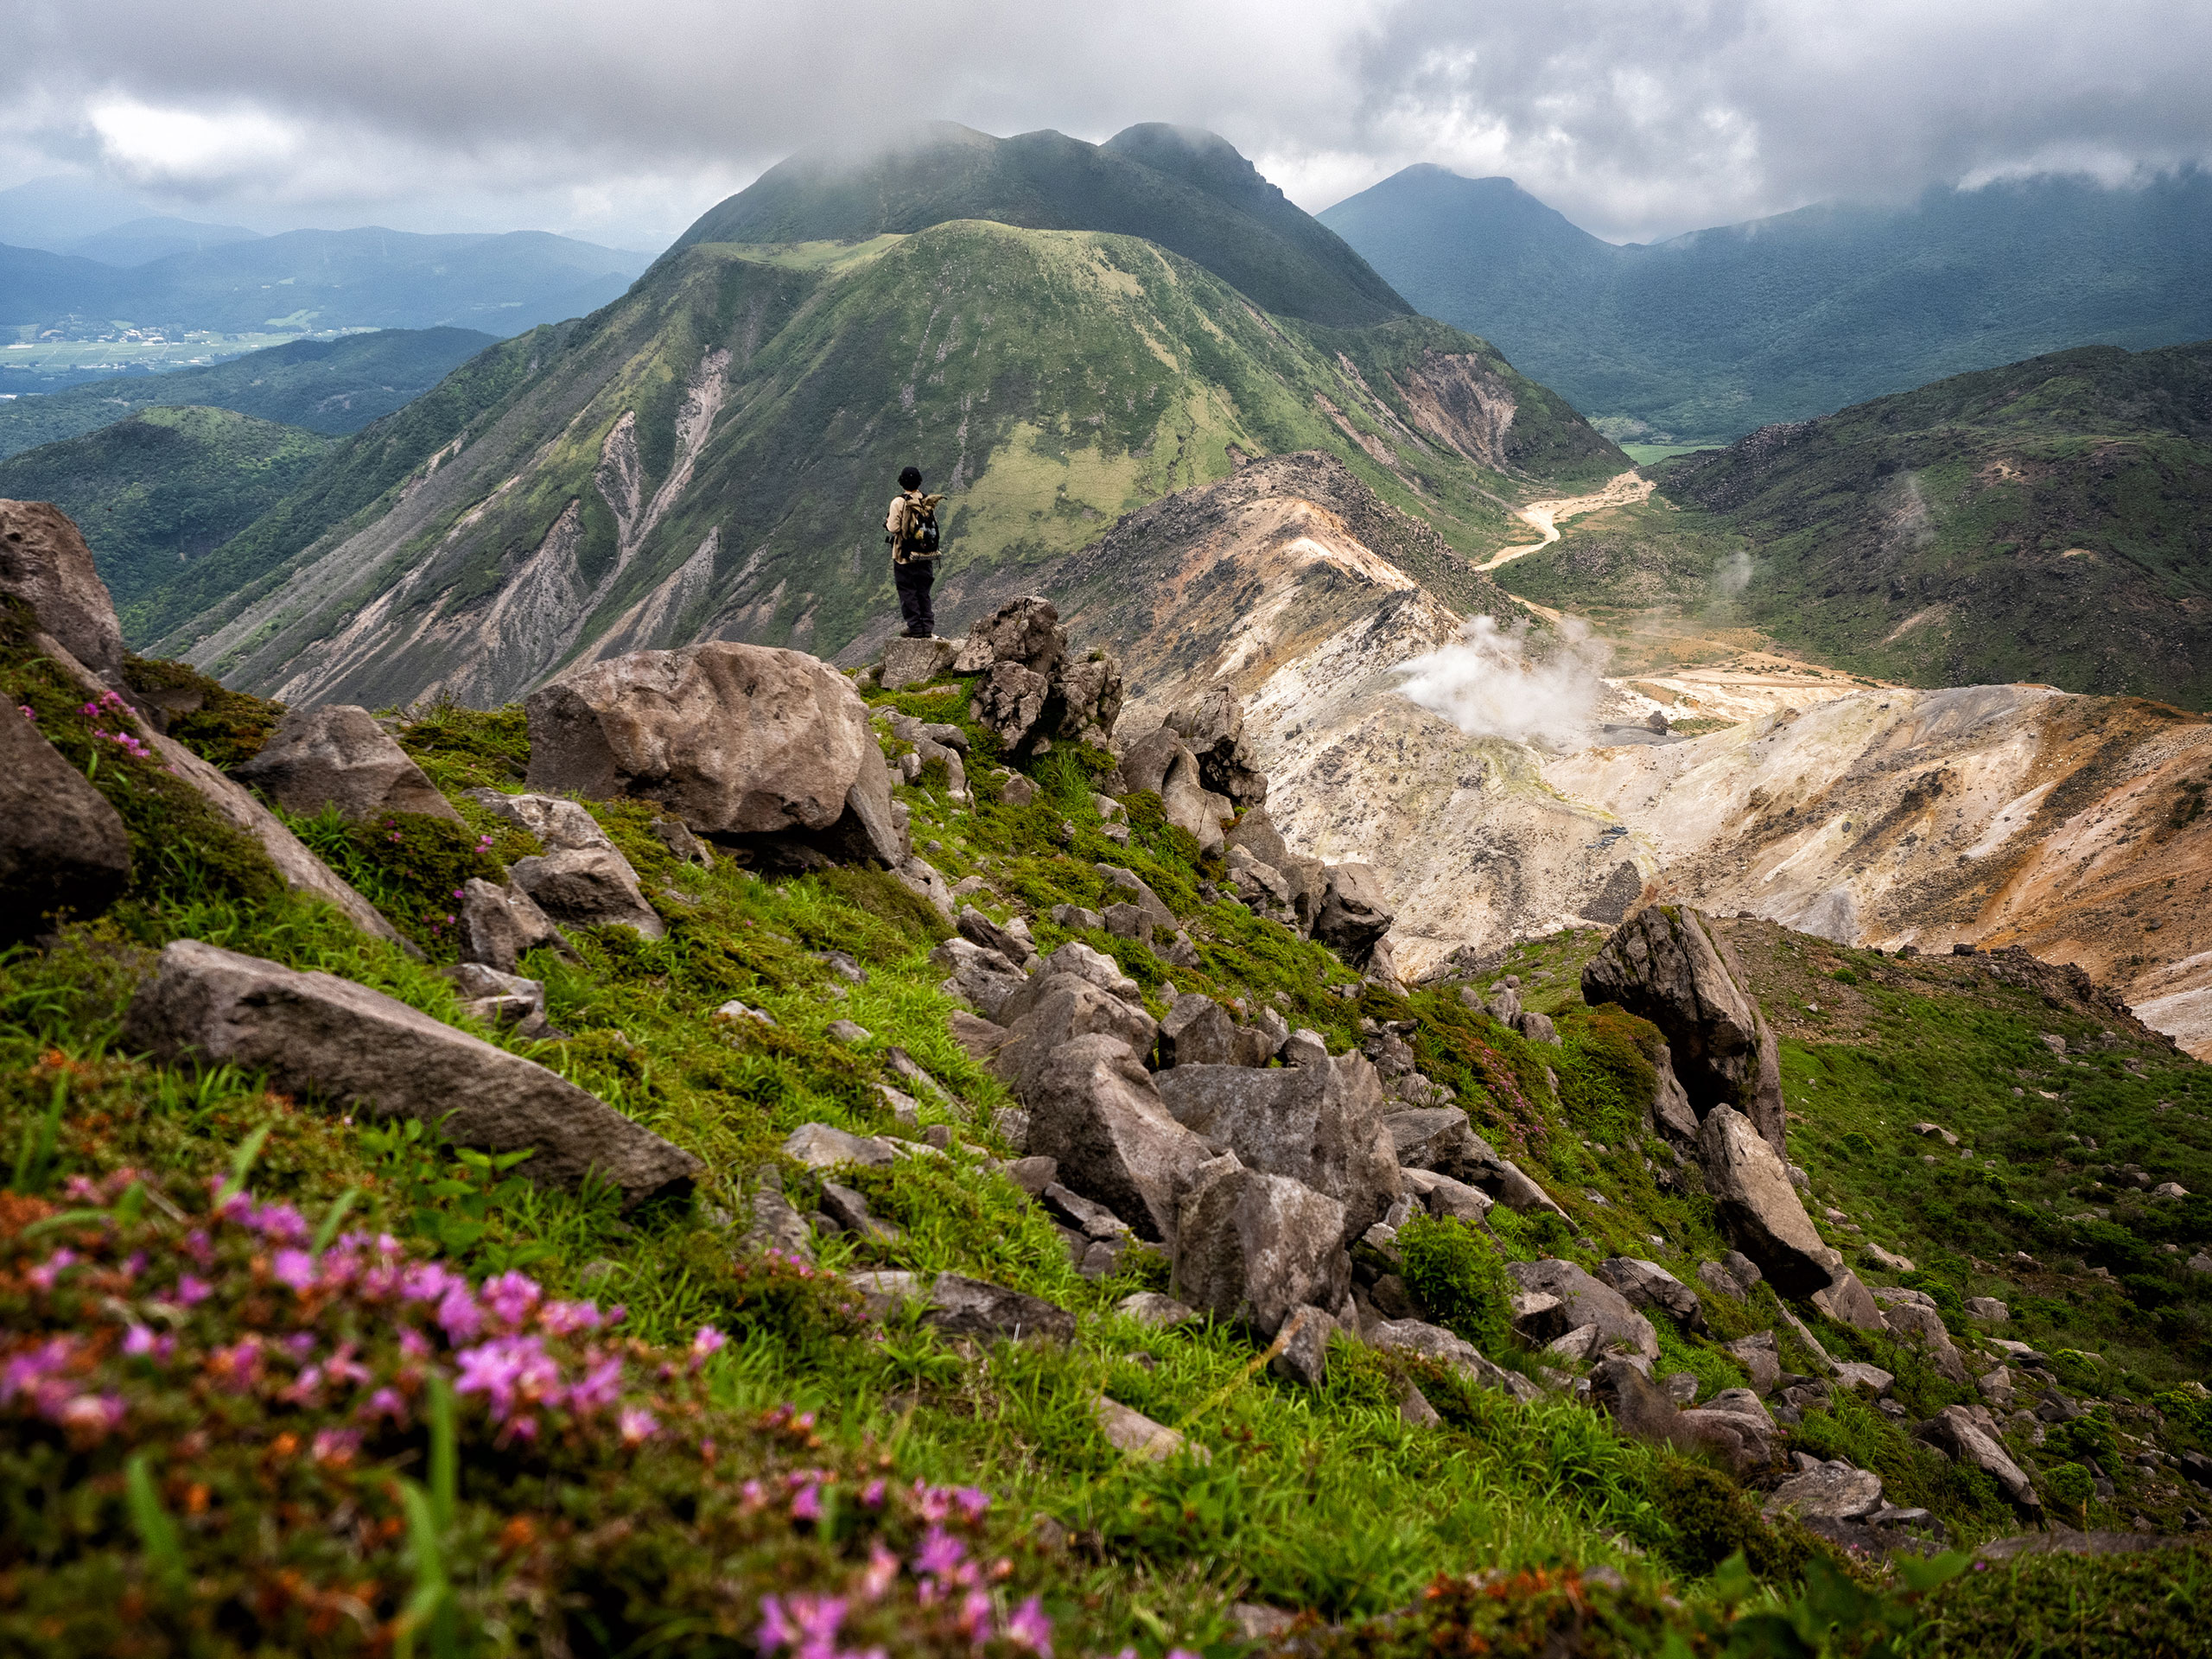 山岳写真家 平野篤がM.ZUIKO DIGITAL ED 12-40mm F2.8 PRO IIで撮影した九重連山 星生山からの火山風景の写真